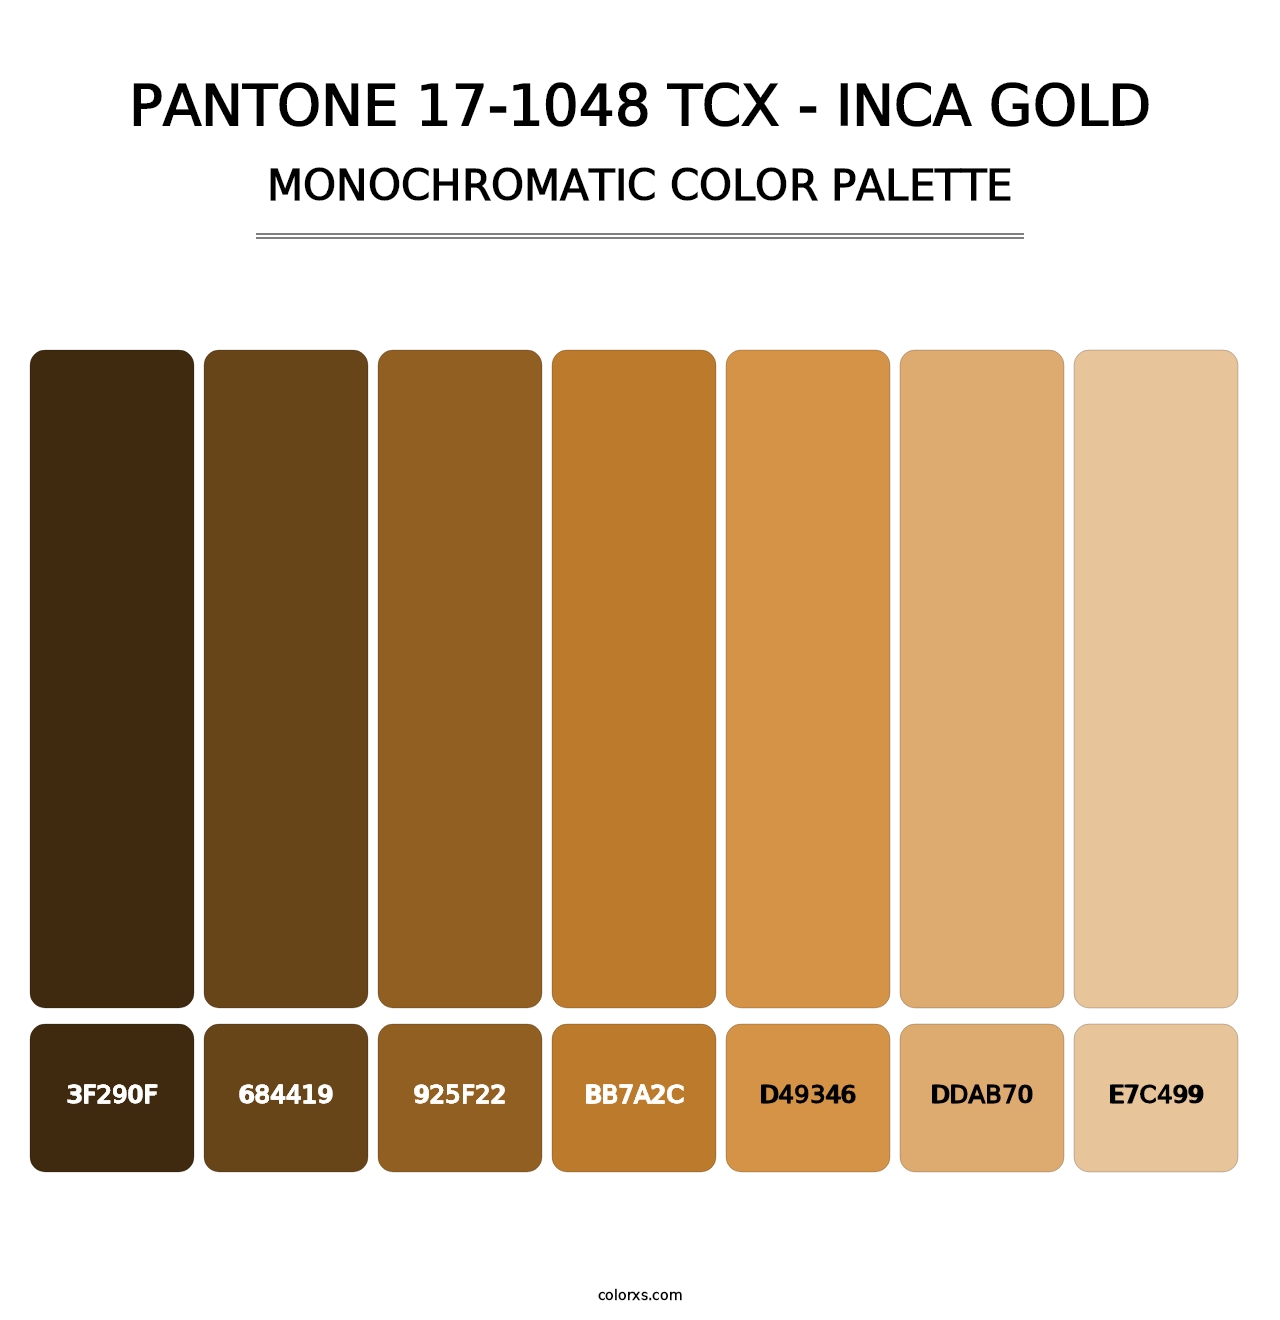 PANTONE 17-1048 TCX - Inca Gold - Monochromatic Color Palette